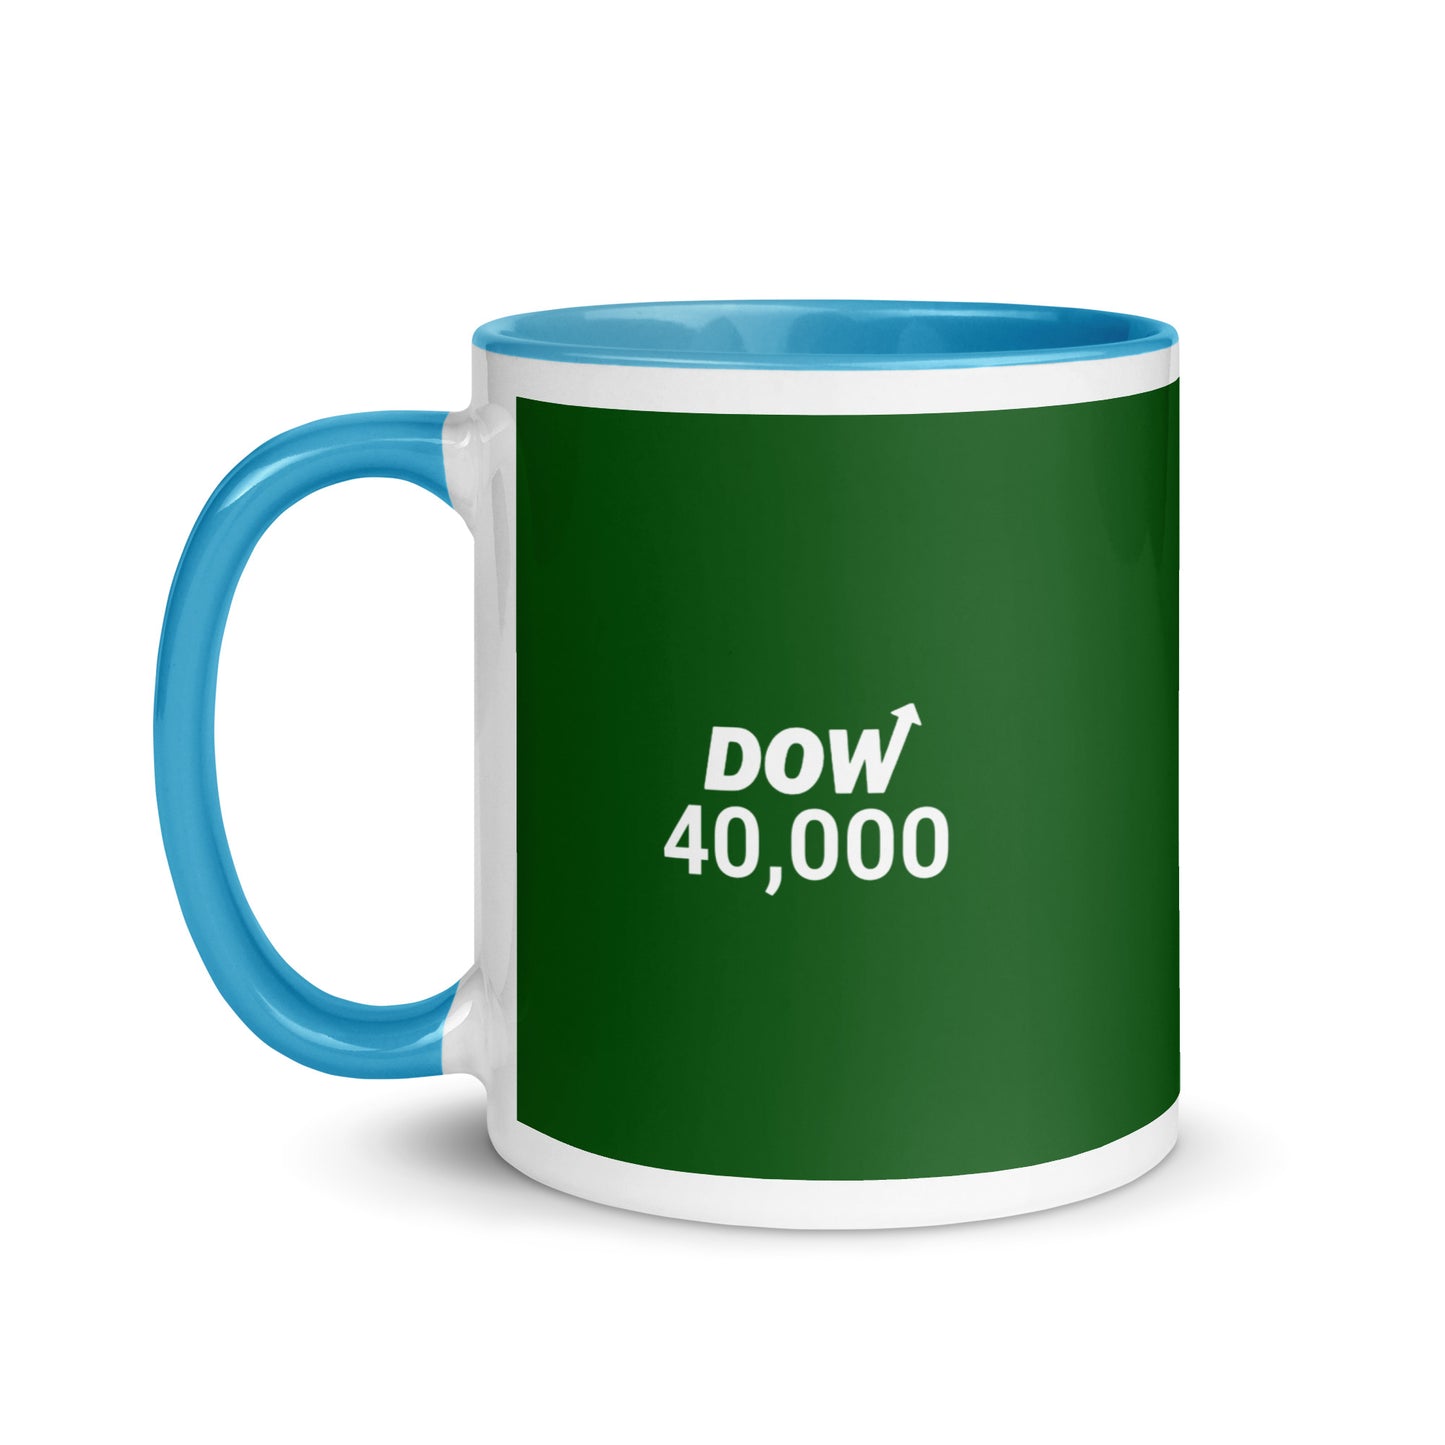 Dow 40.000 Mug / Dow 40k Mug / Dow 40000 Mug with Color Inside